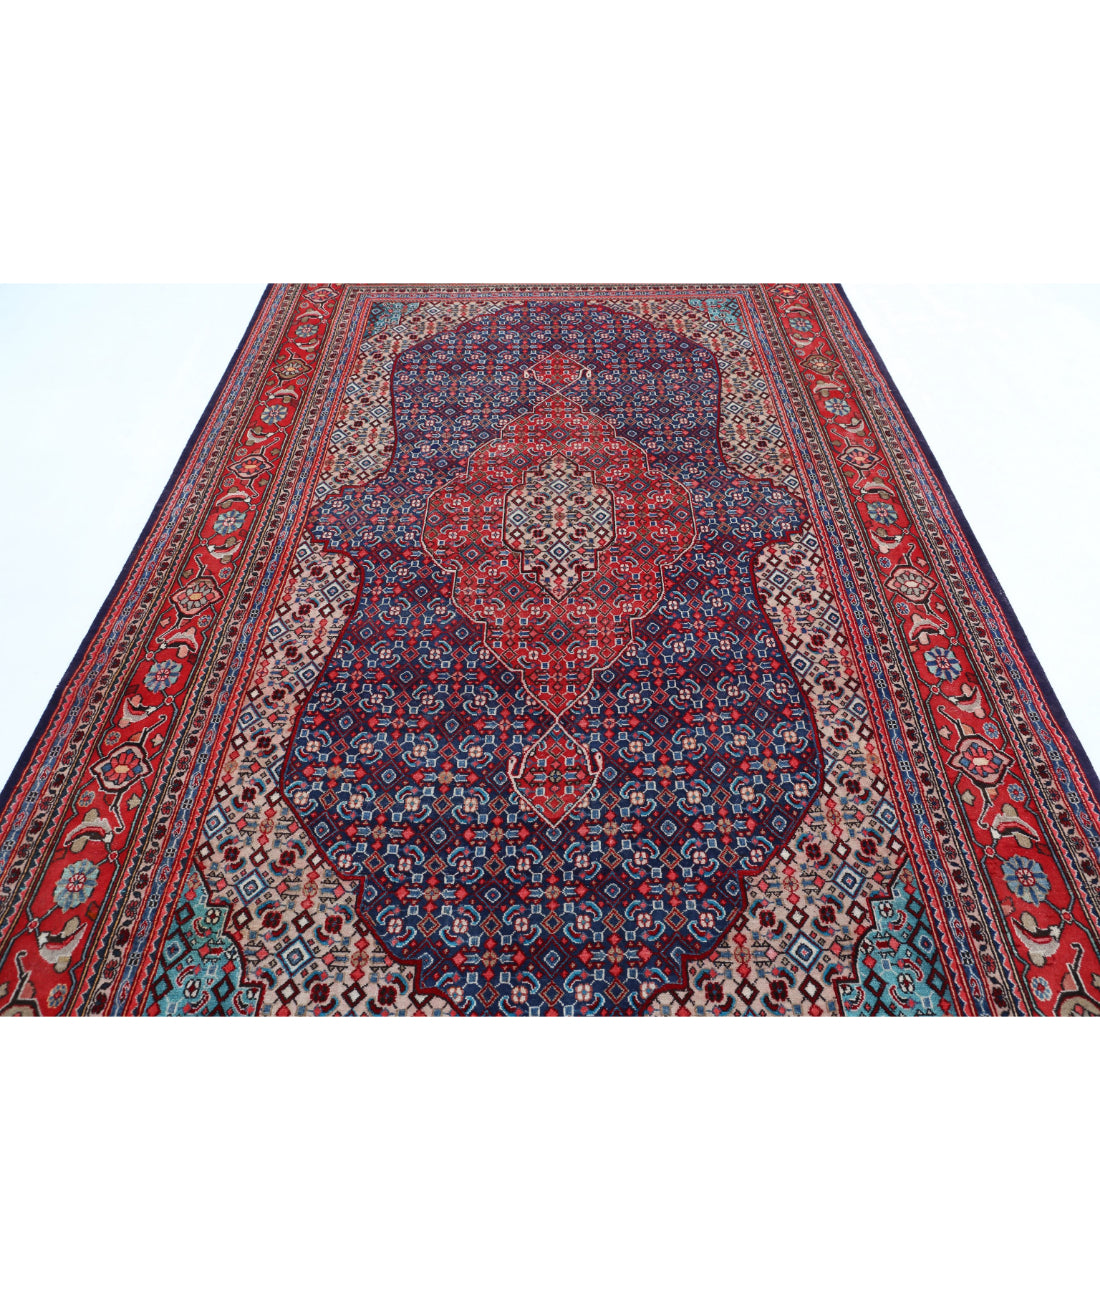 Hand Knotted Persian Bijar Wool Rug - 6'7'' x 10'7'' 6'7'' x 10'7'' (198 X 318) / Blue / Red